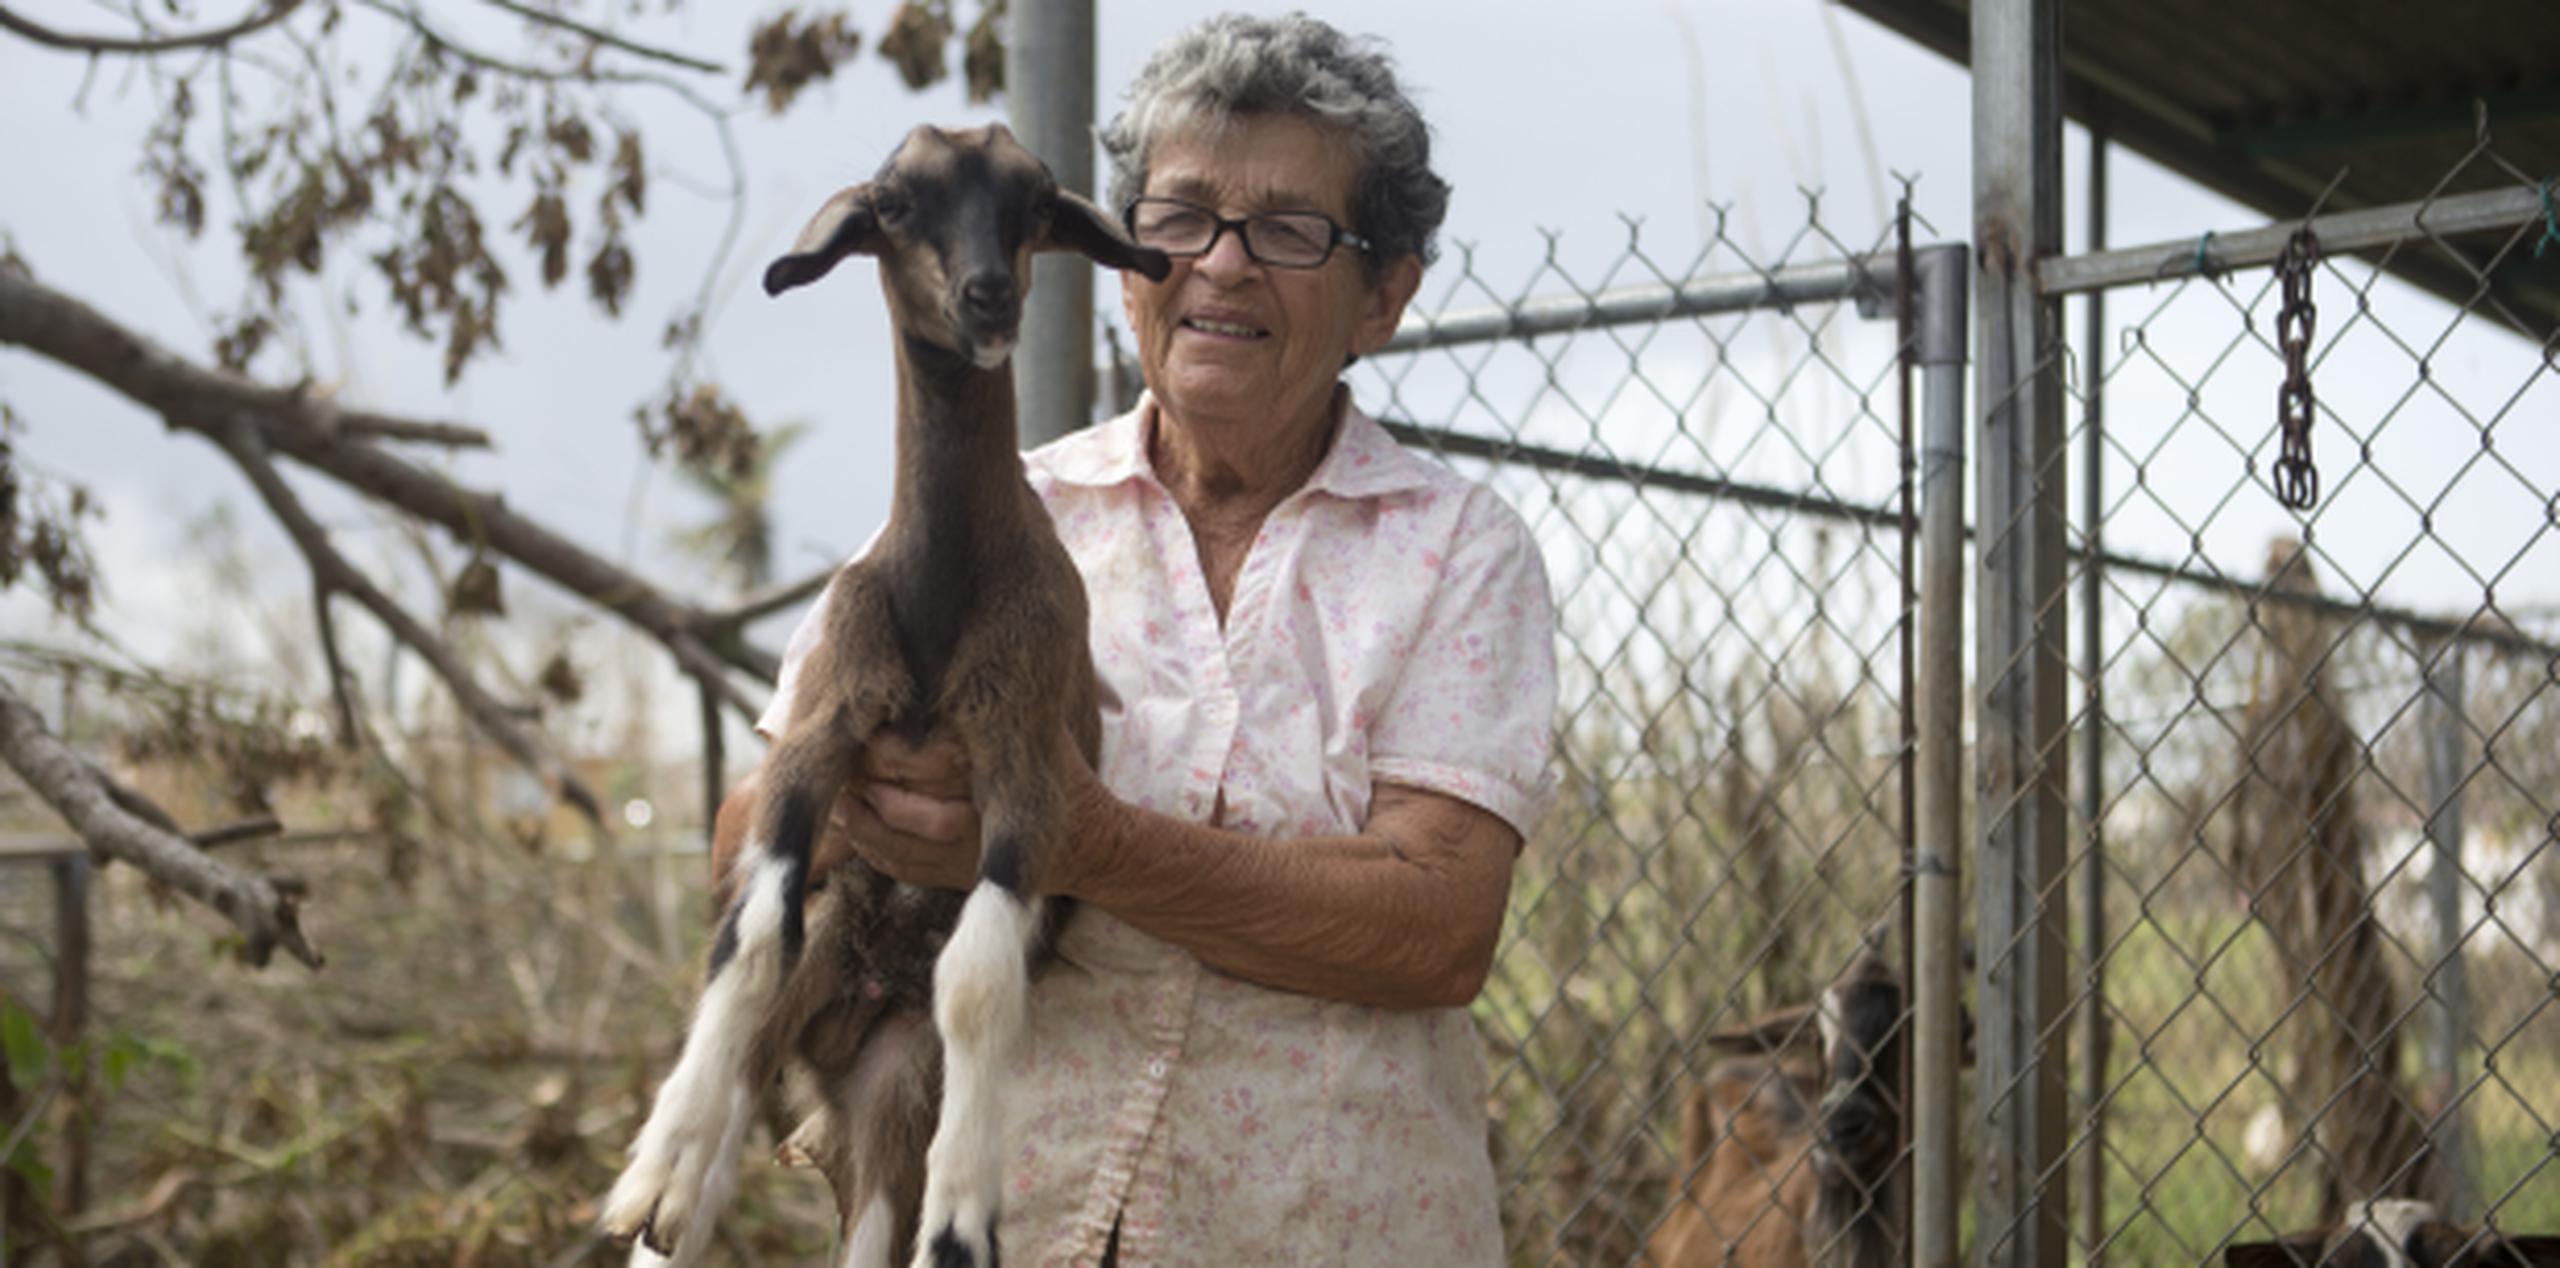 Doña Mercedes explicó que considera a los cabros como mascotas y las “quiero mucho”. (TERESA.CANINO@GFRMEDIA.COM)
